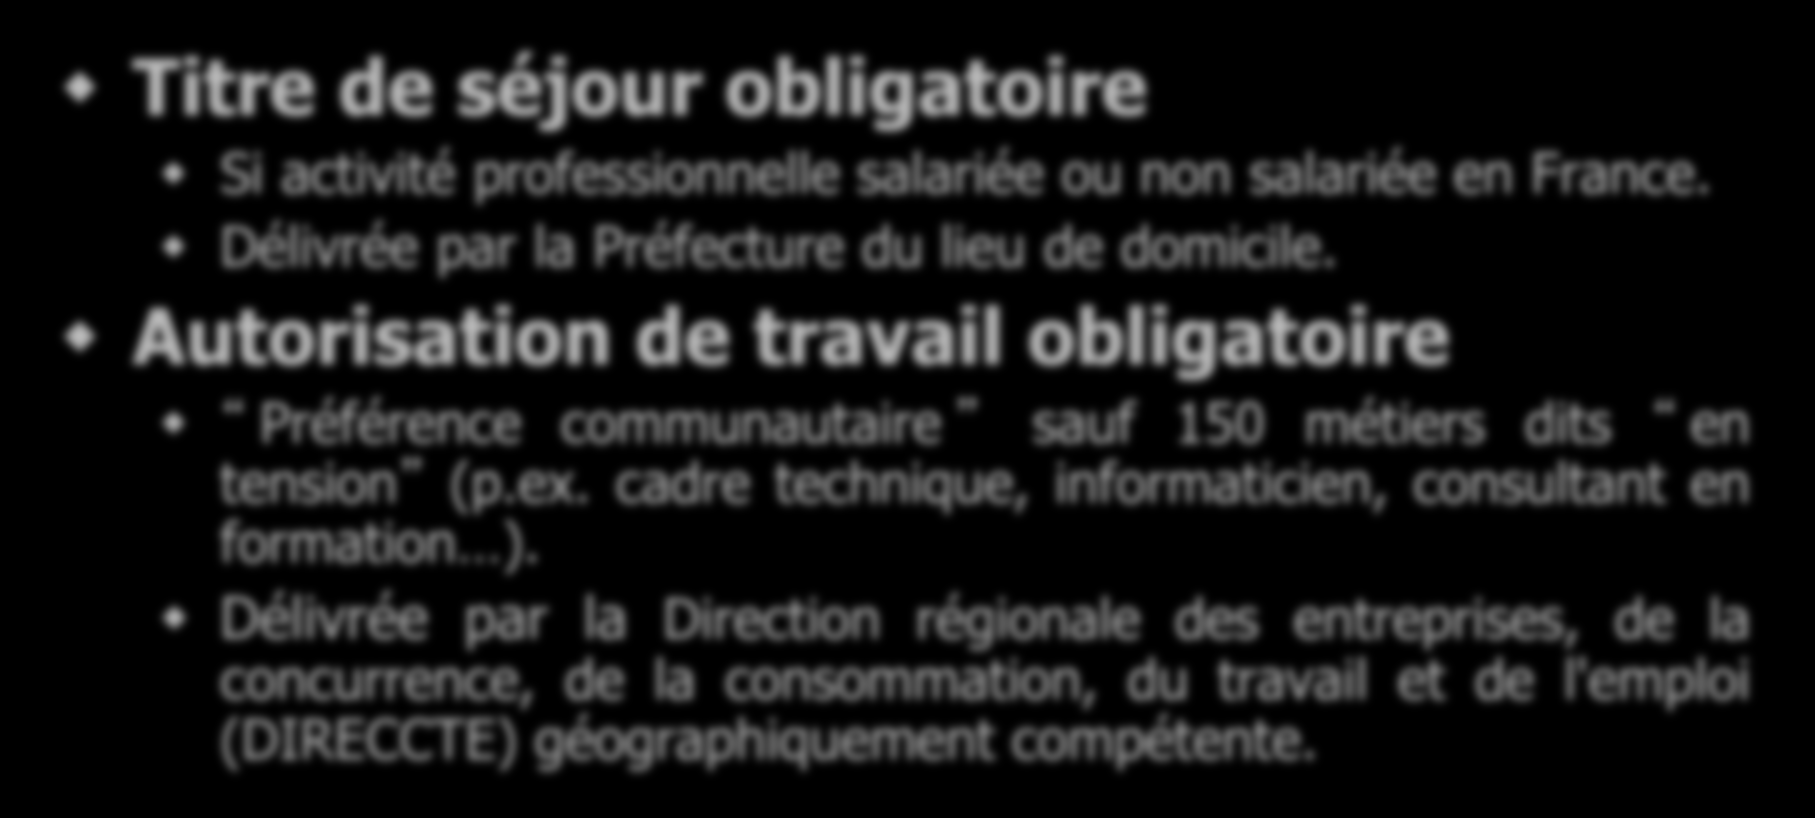 Autorisation de travail obligatoire Préférence communautaire sauf 150 métiers dits en tension (p.ex.